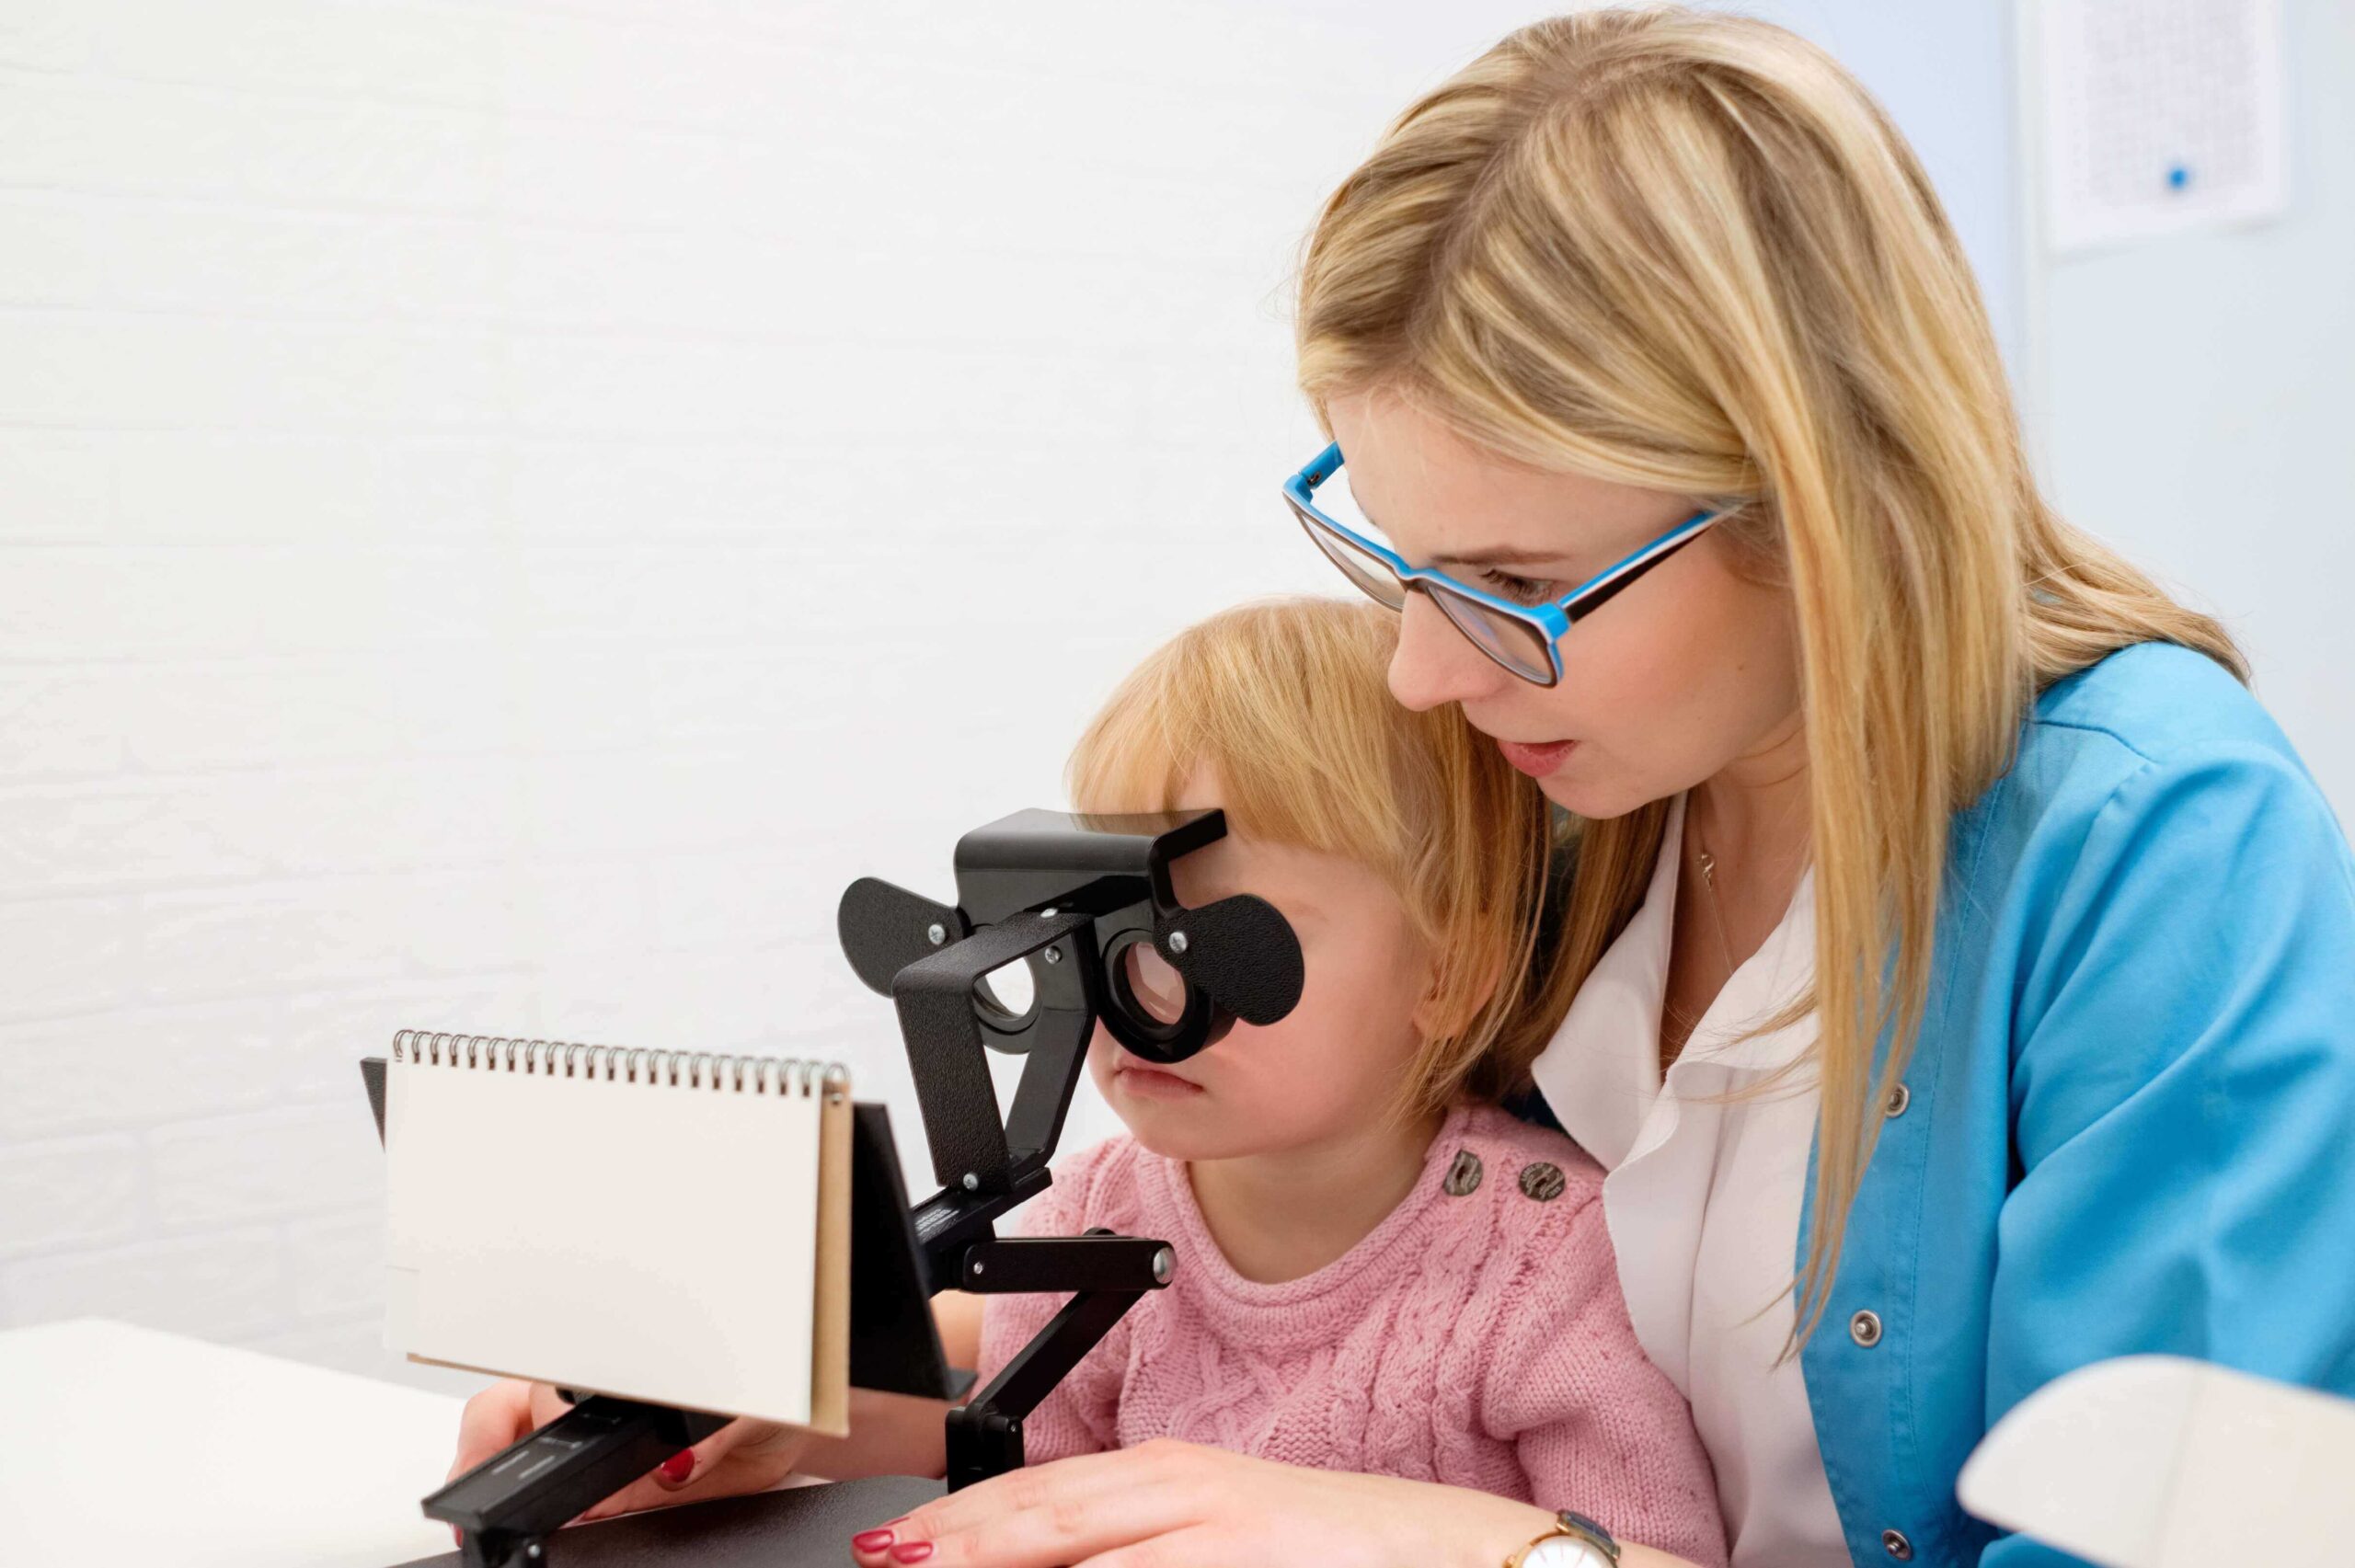 Badanie wzroku dzieci pod kątem dyslekcji. Profesjonalne badanie wzroku we Wrocławiu wykonywane przez optometrystę.